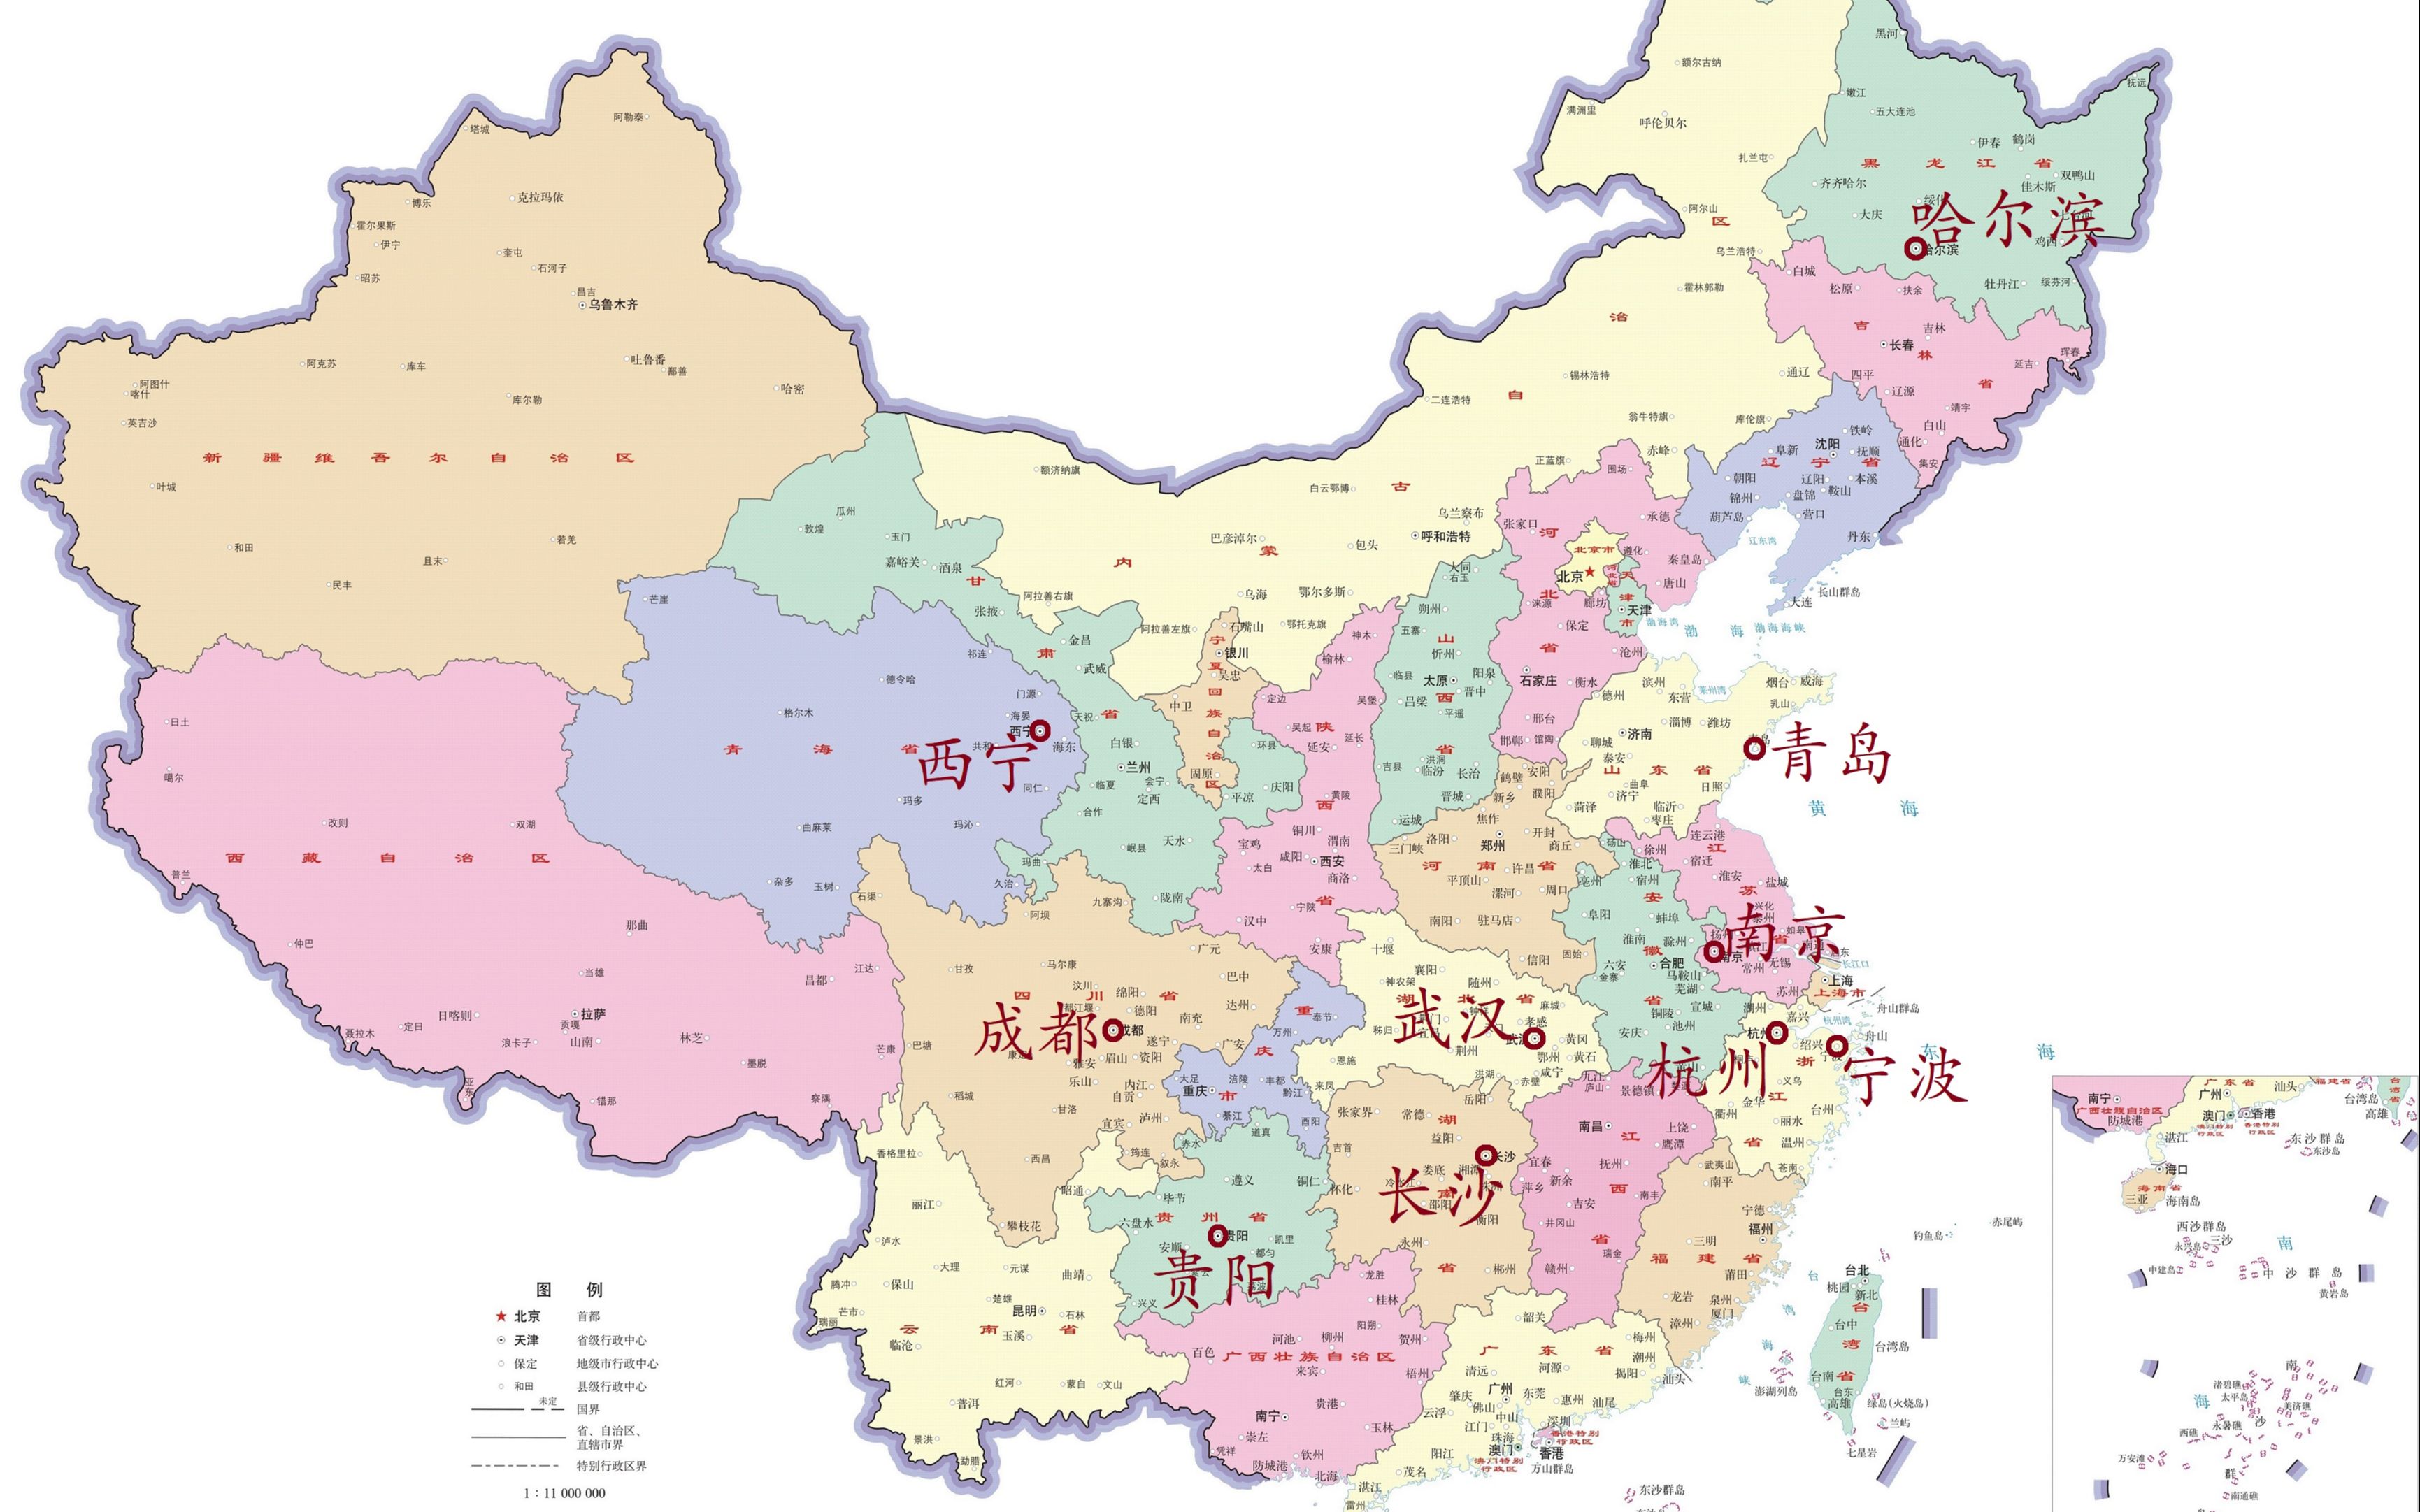 中国省区图 省会图片